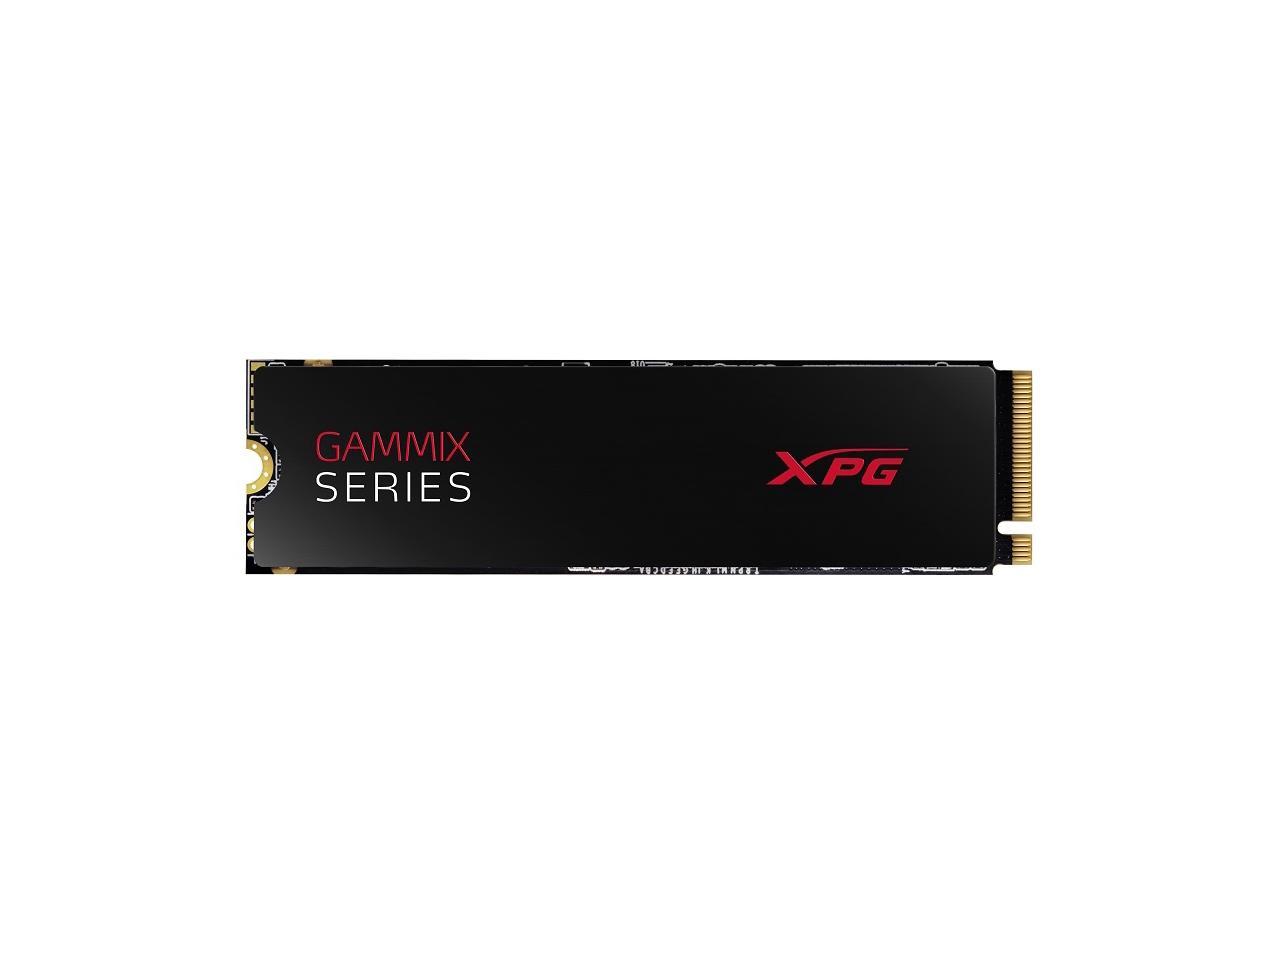 XPG S7 Series: 512GB PCIe Gen3x4 M.2 2280 Solid State Drive